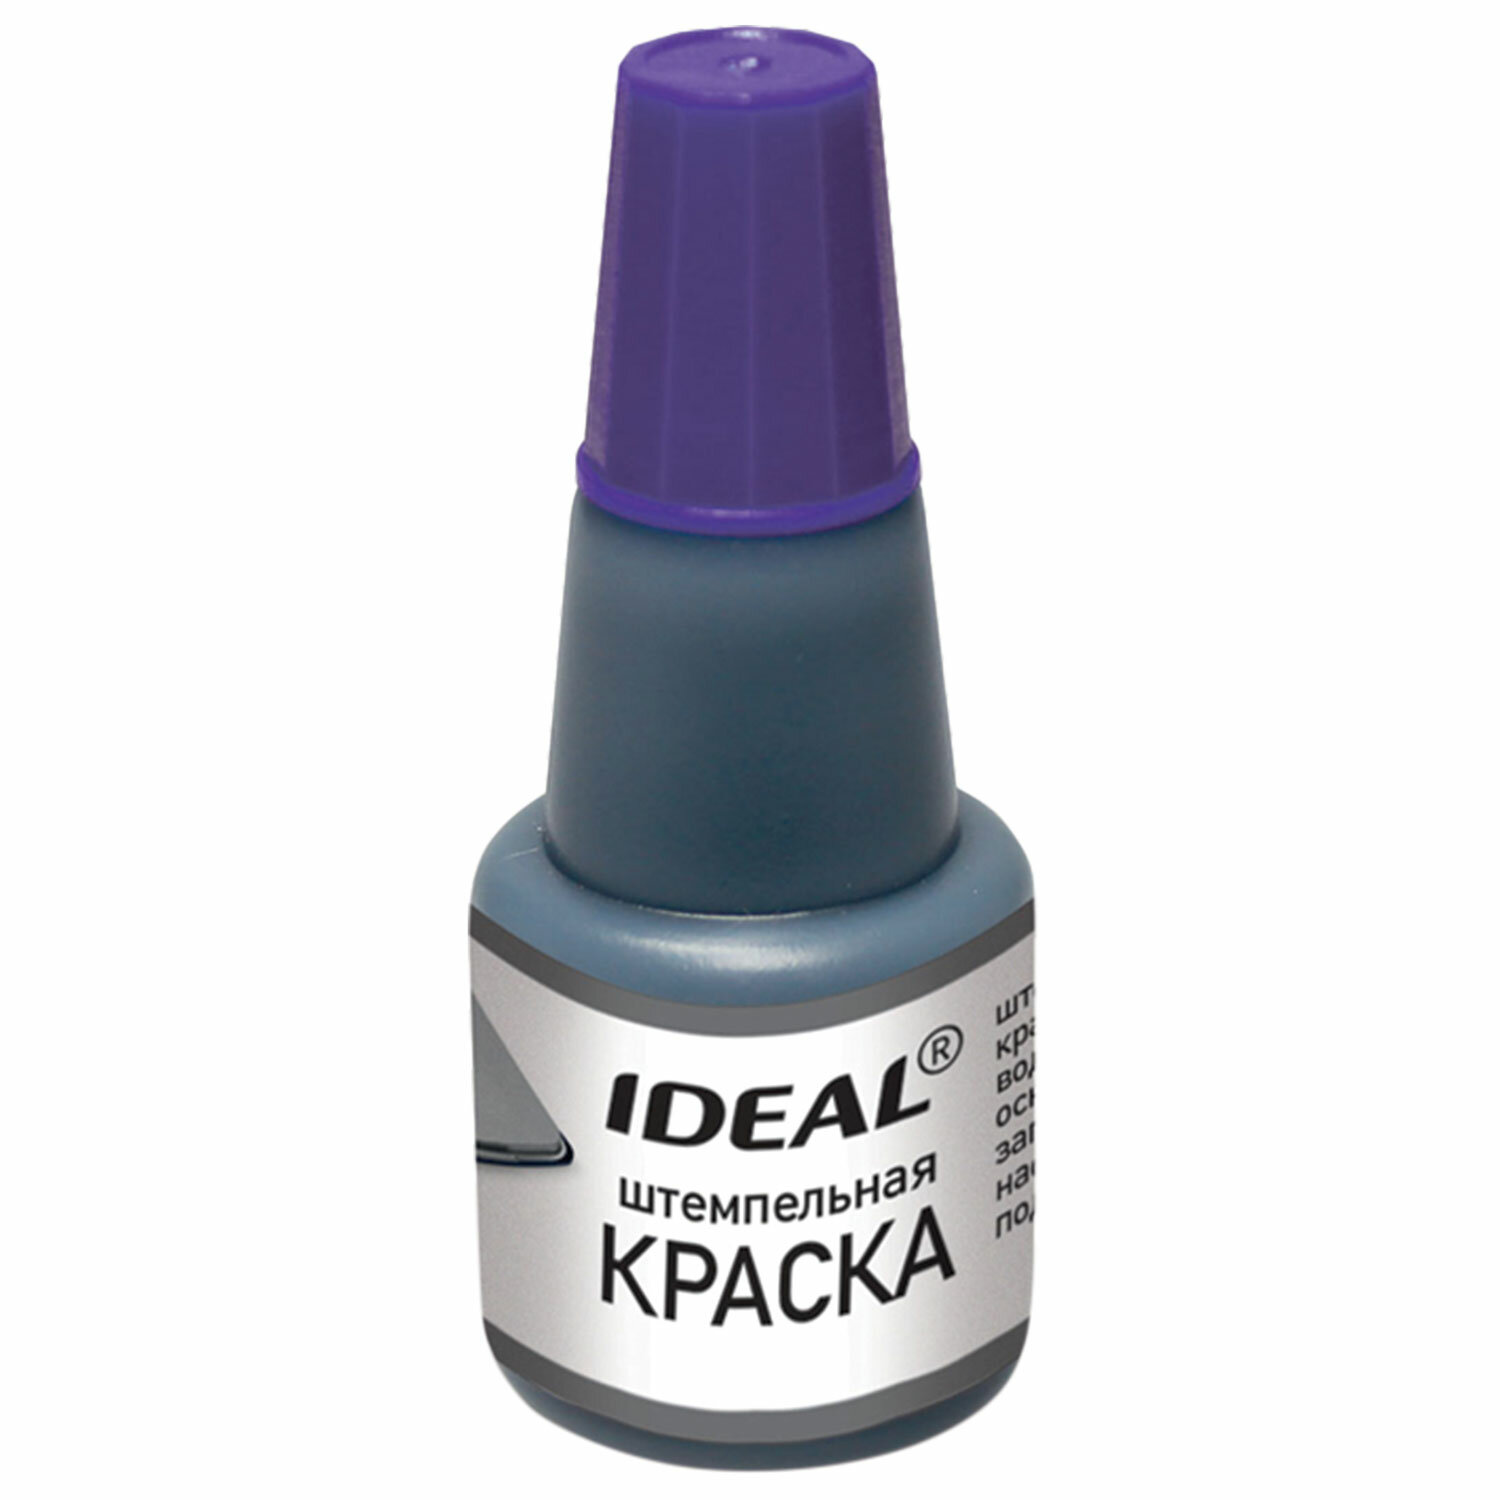 фото Краска штемпельная trodat ideal фиолетовая 24 мл, на водной основе, 7711ф, 153080